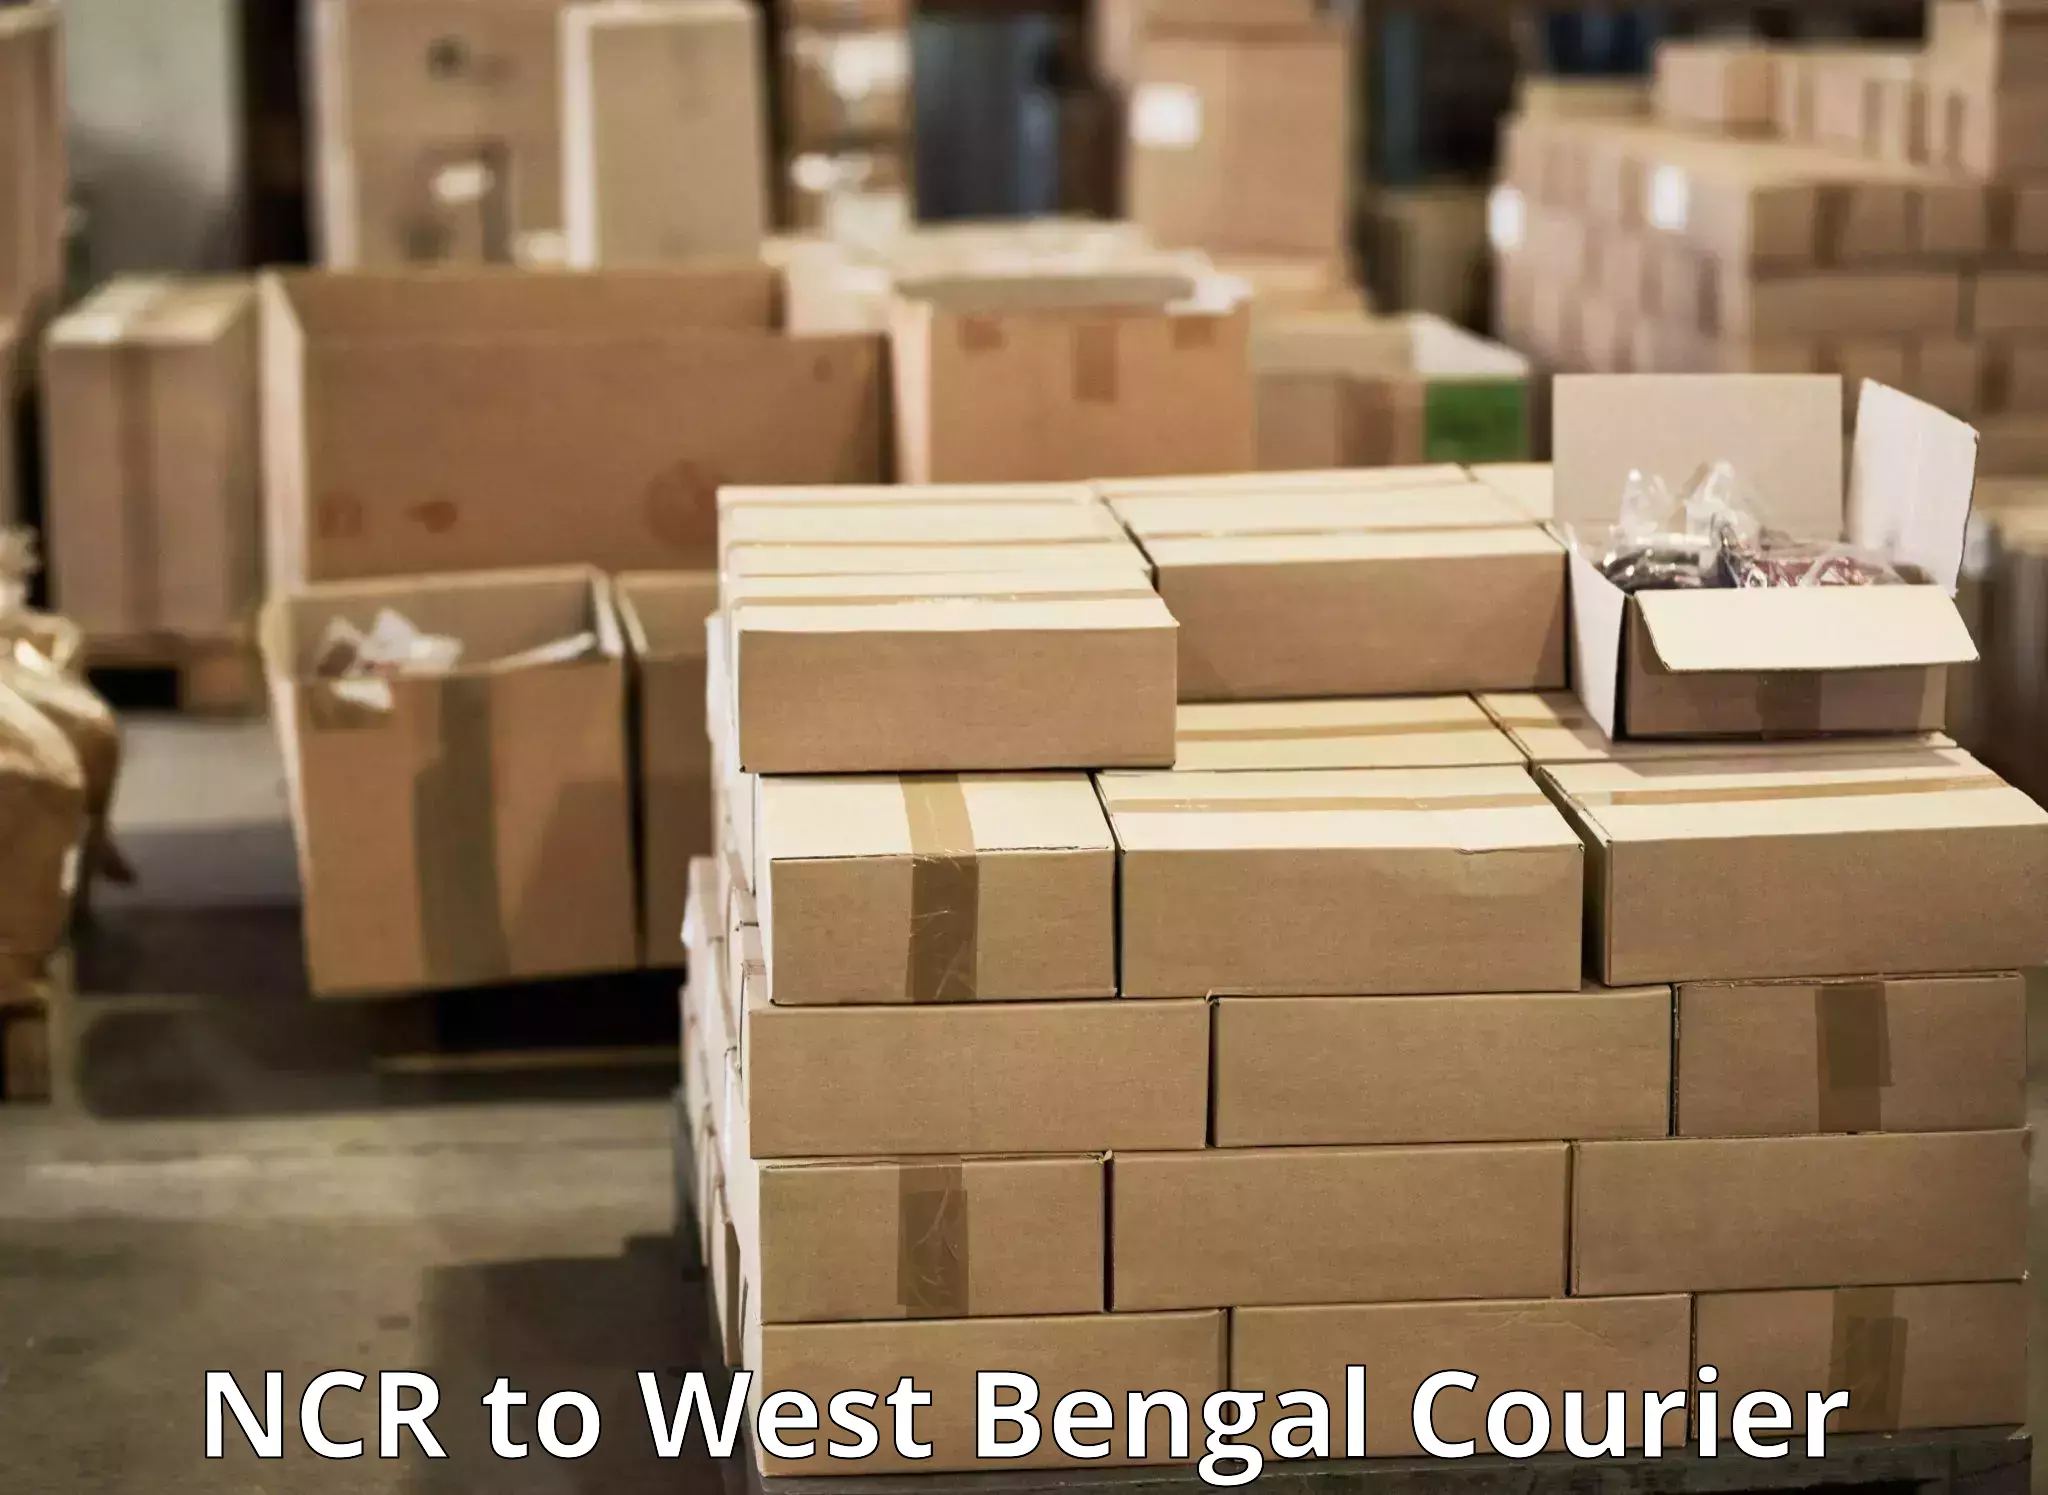 Cargo delivery service NCR to Haldia port